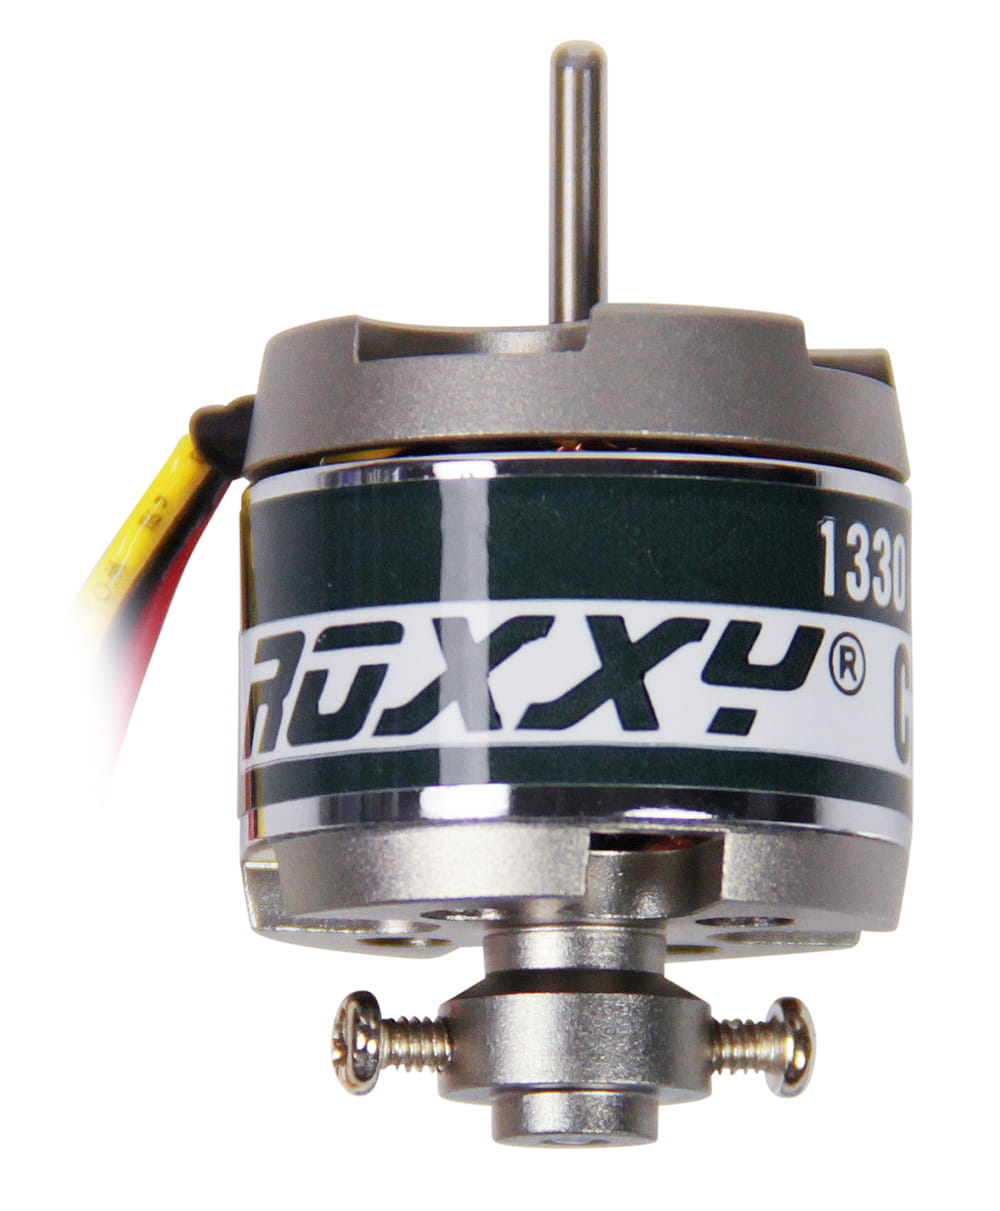 Multiplex ROXXY Brushless Motor BL Outrunner C22-20-1330kV